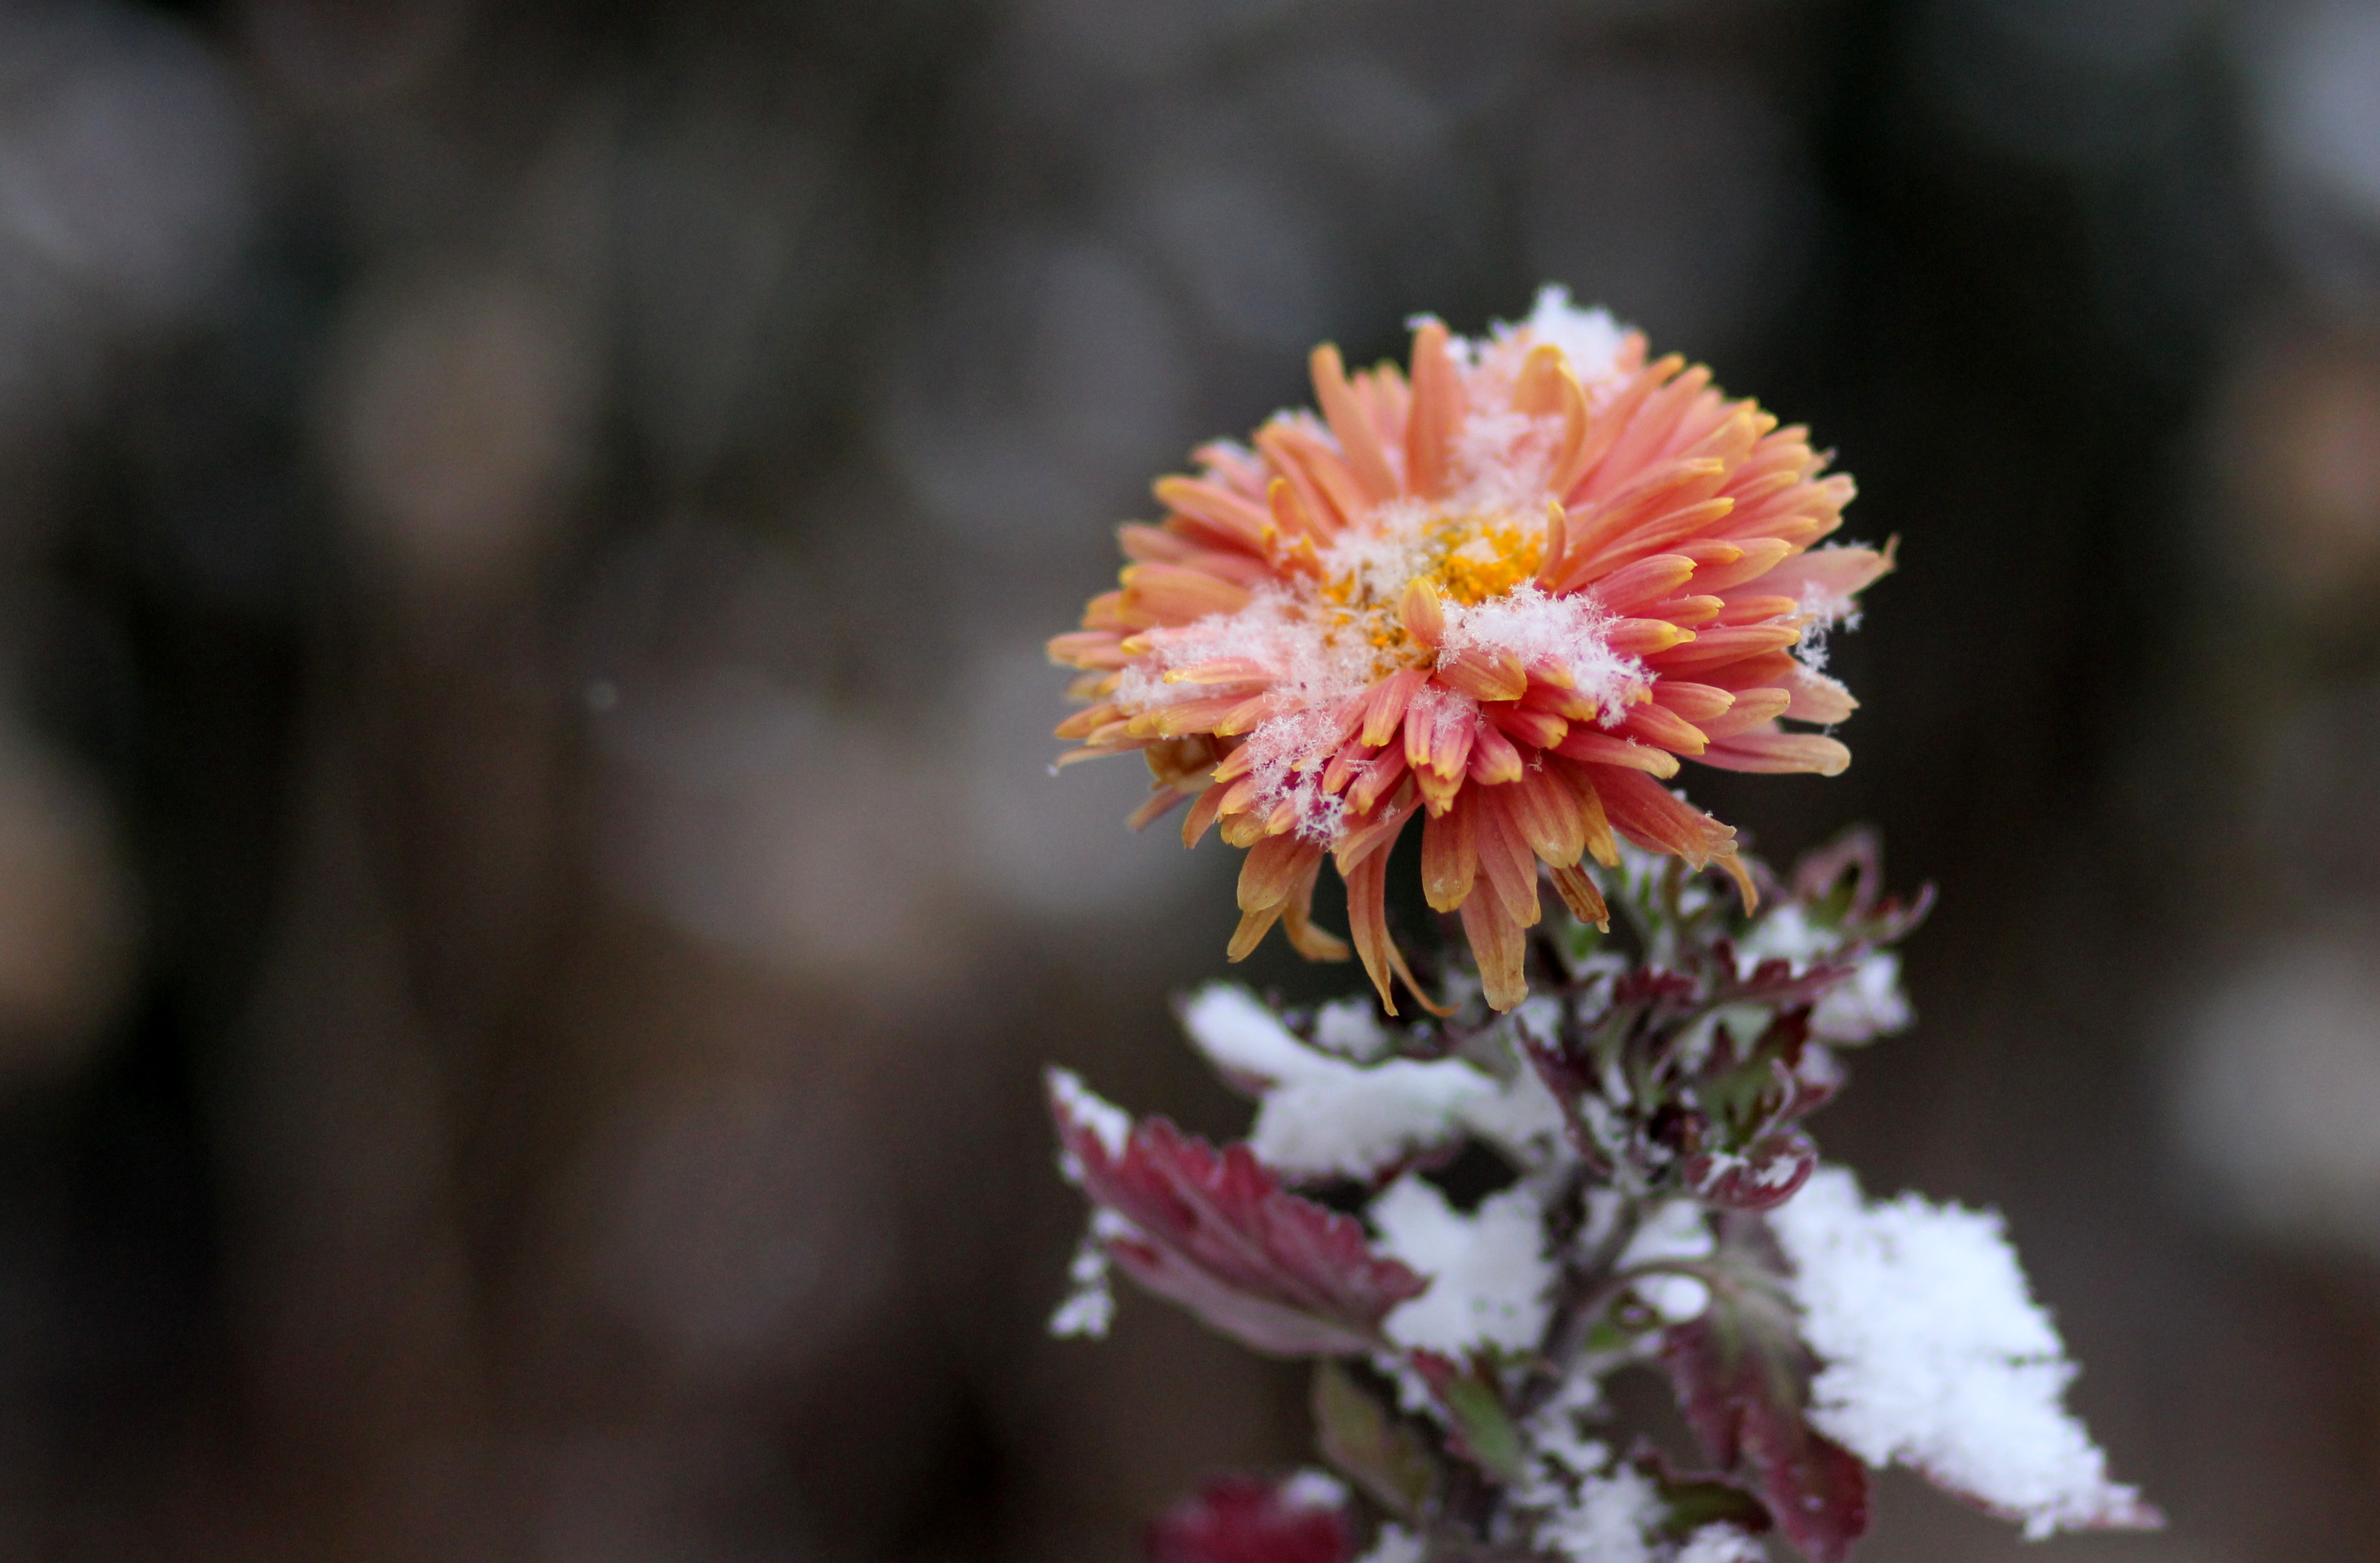 8k Chrysanthemum Images